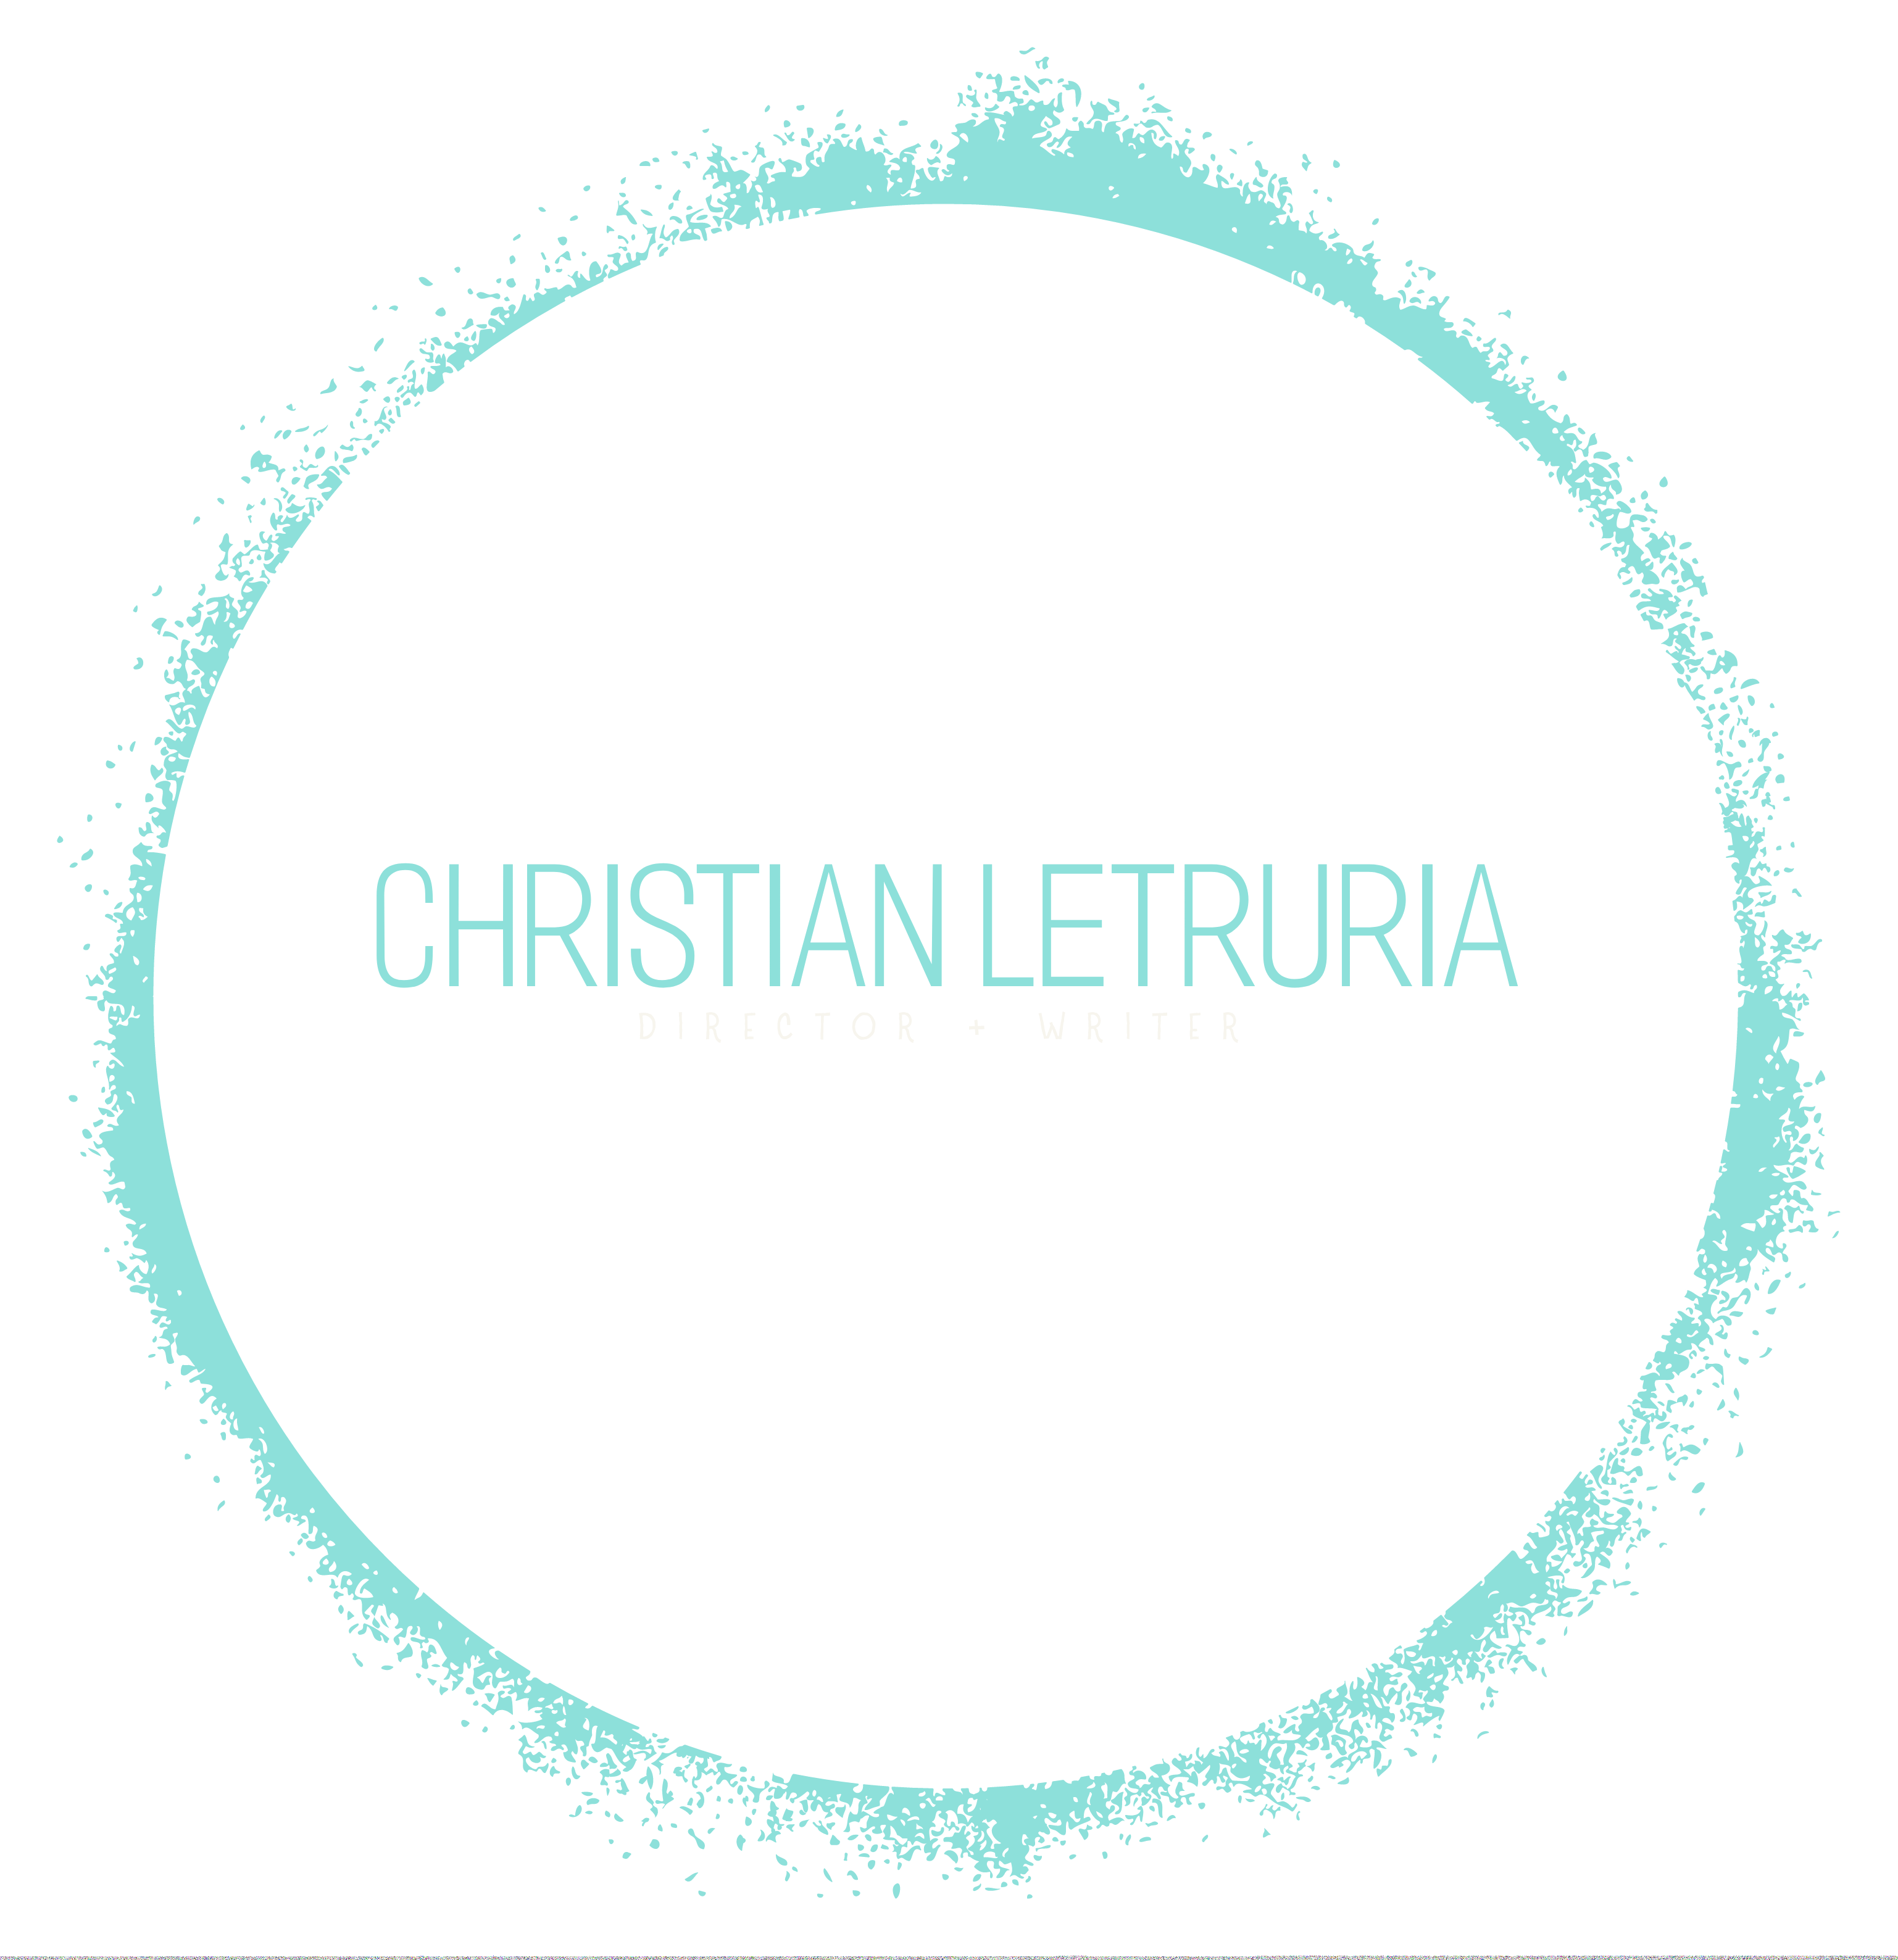 Christian Letruria